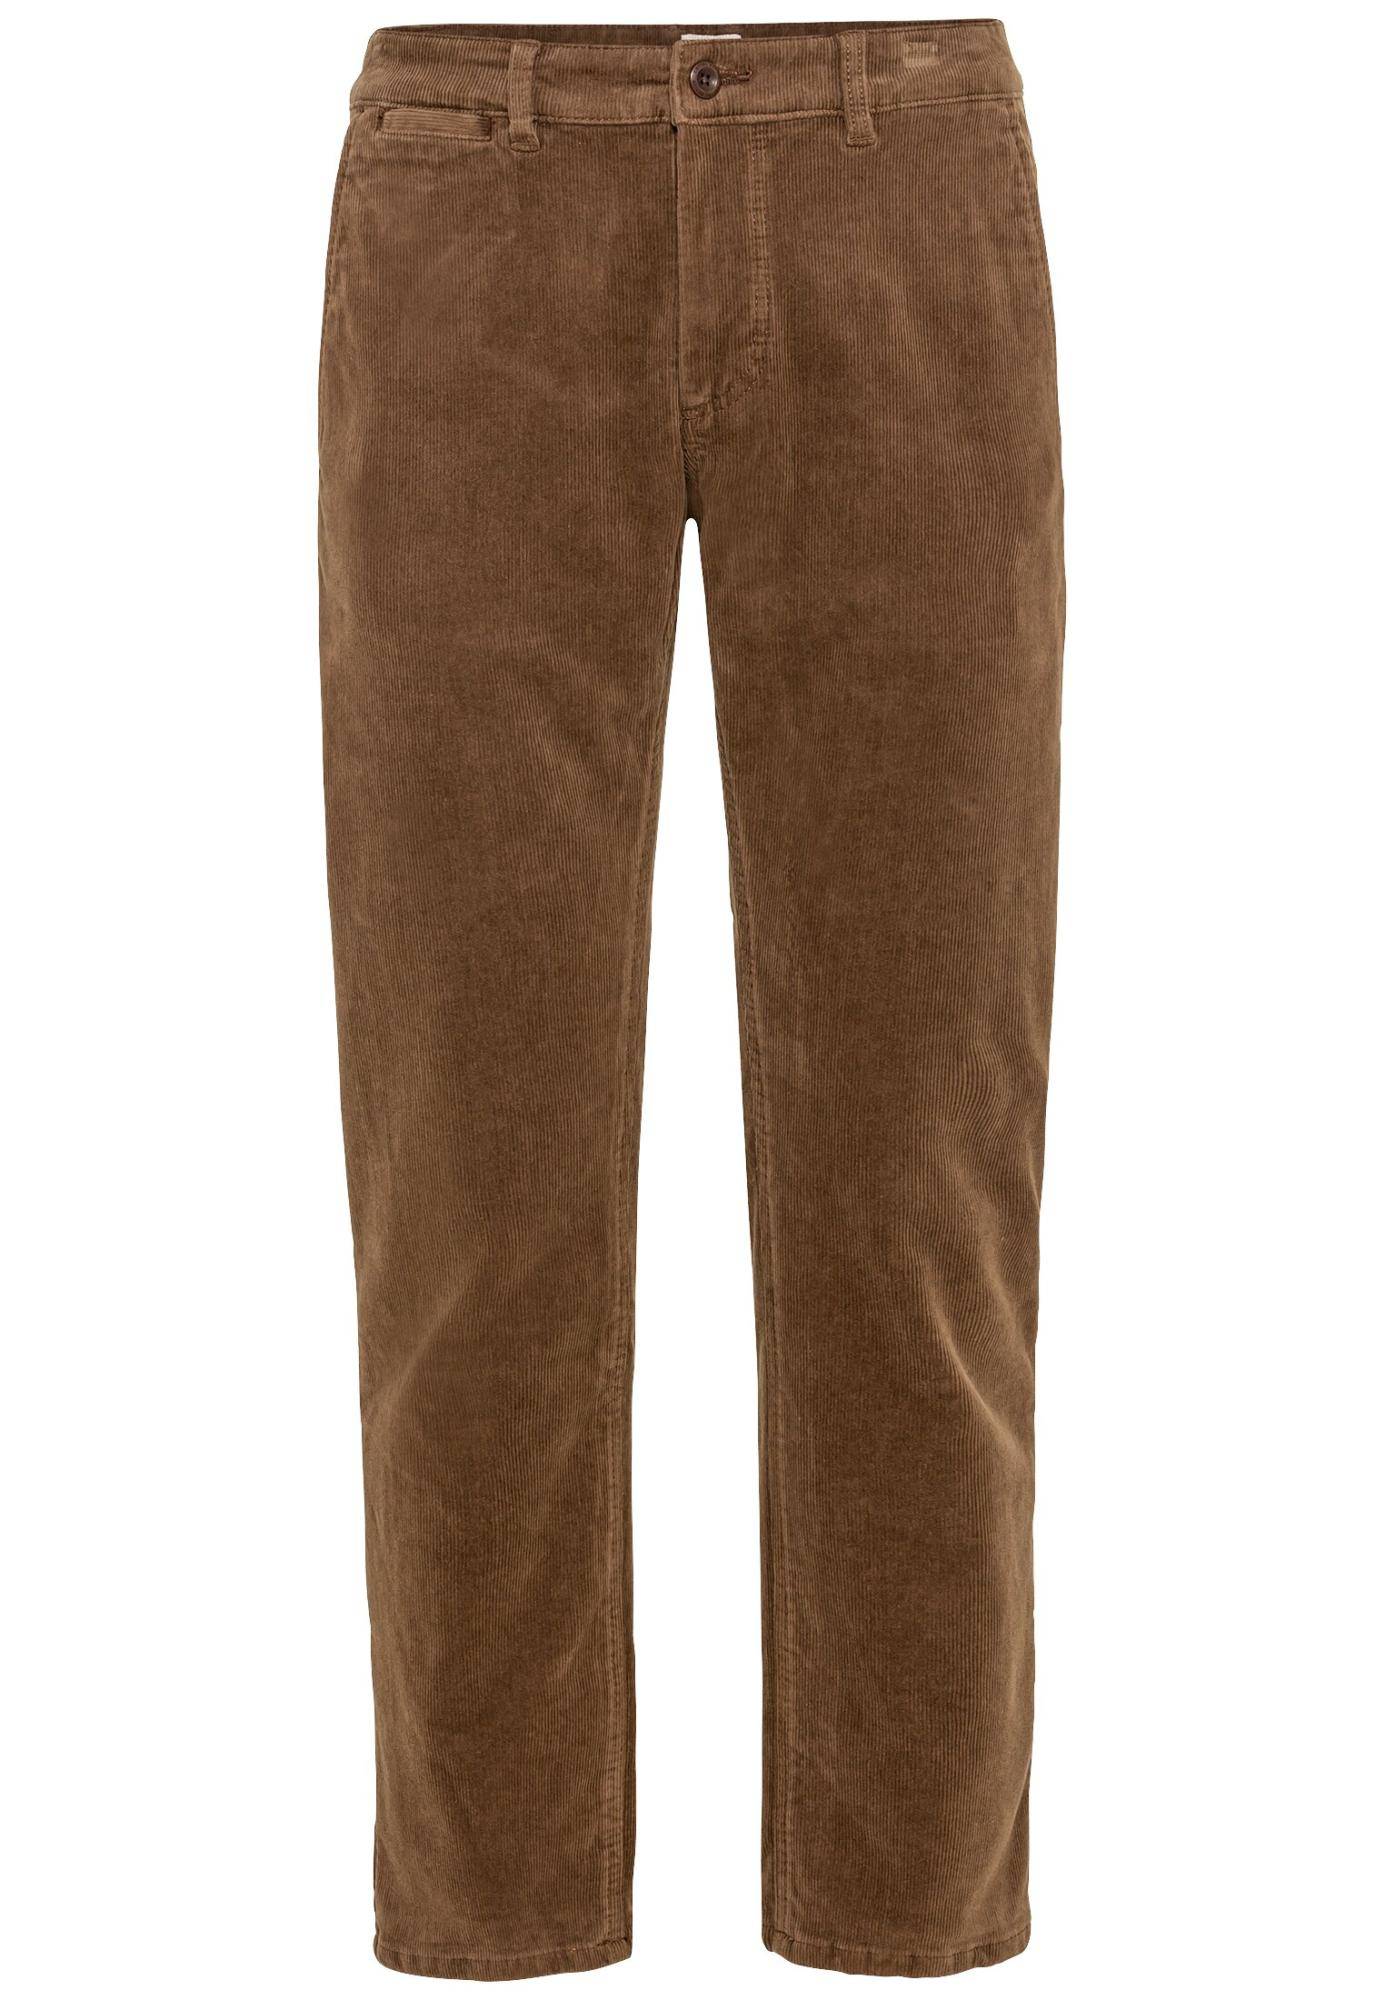 Мужские брюки Camel Active, коричневые, цвет коричневый, размер 35